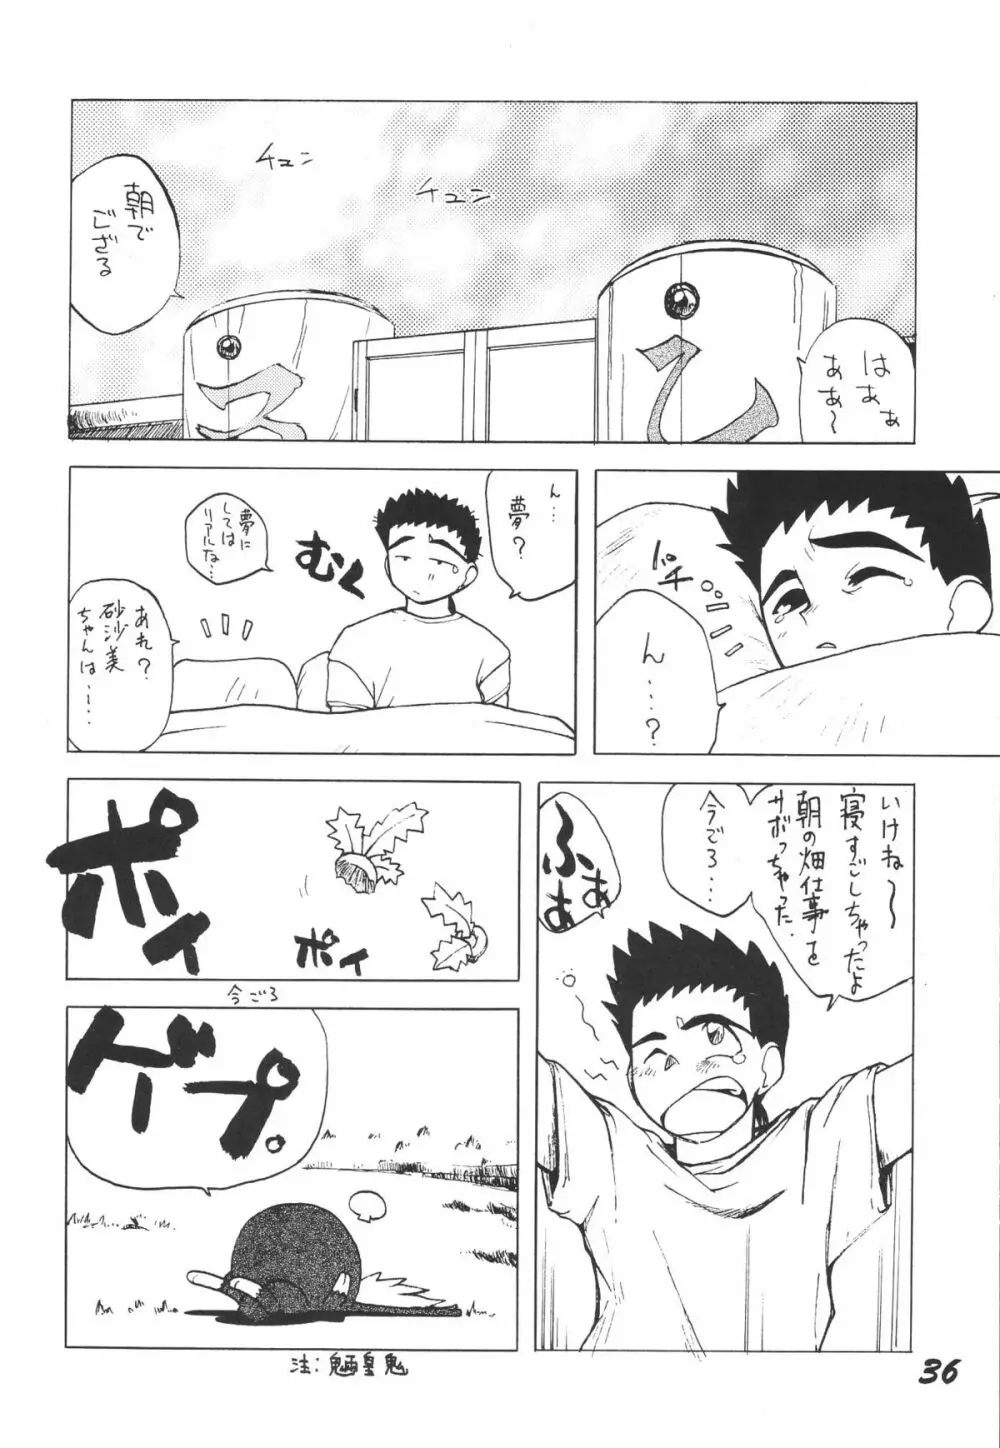 無用野郎Aチーム3.5 白花繚乱 35ページ